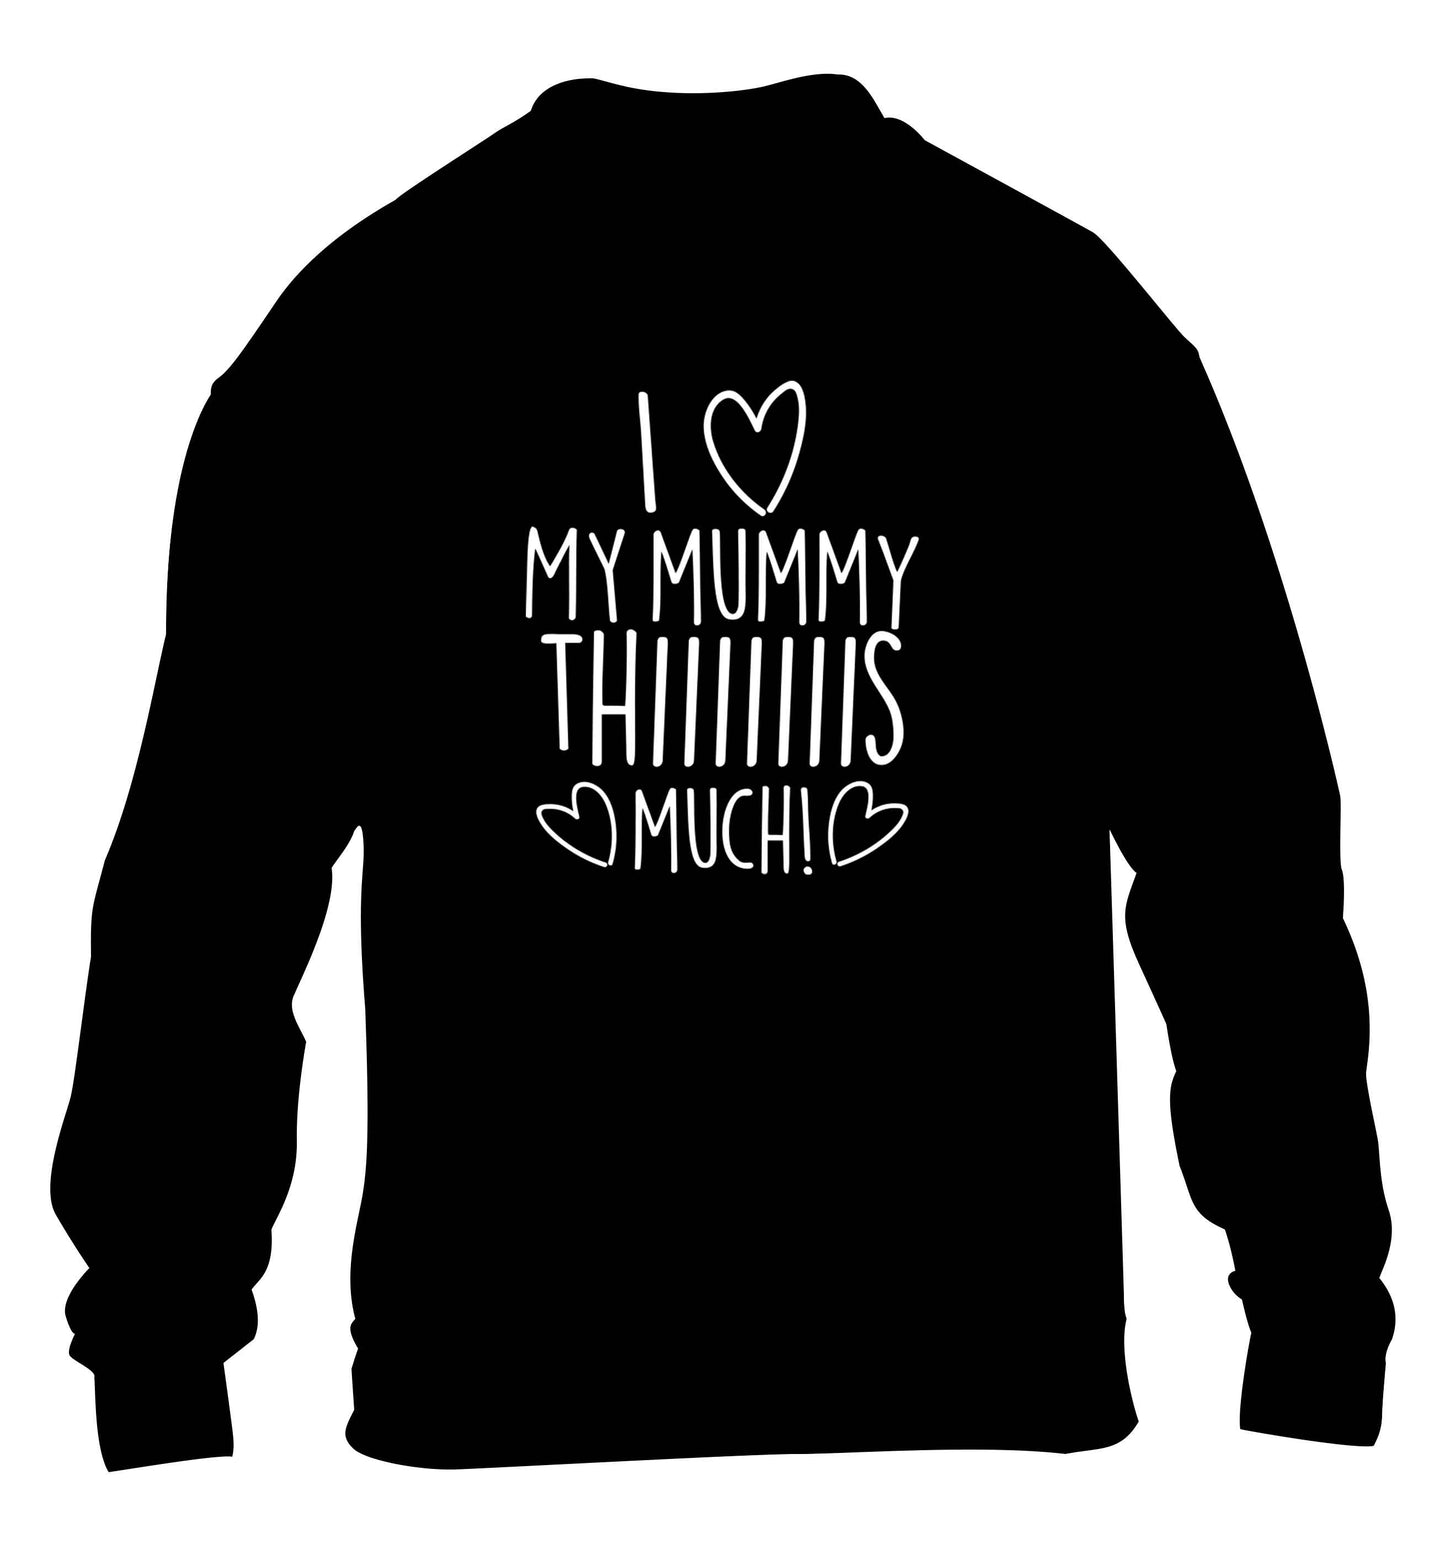 I love my mummy thiiiiis much! children's black sweater 12-13 Years